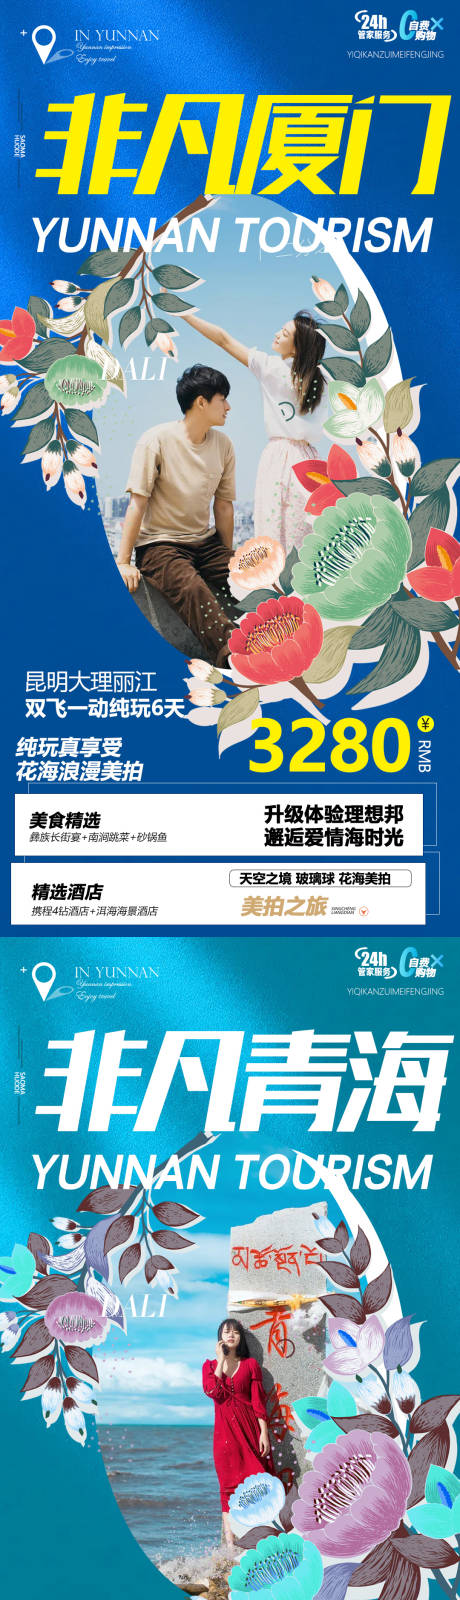 青海云南厦门旅游系列海报